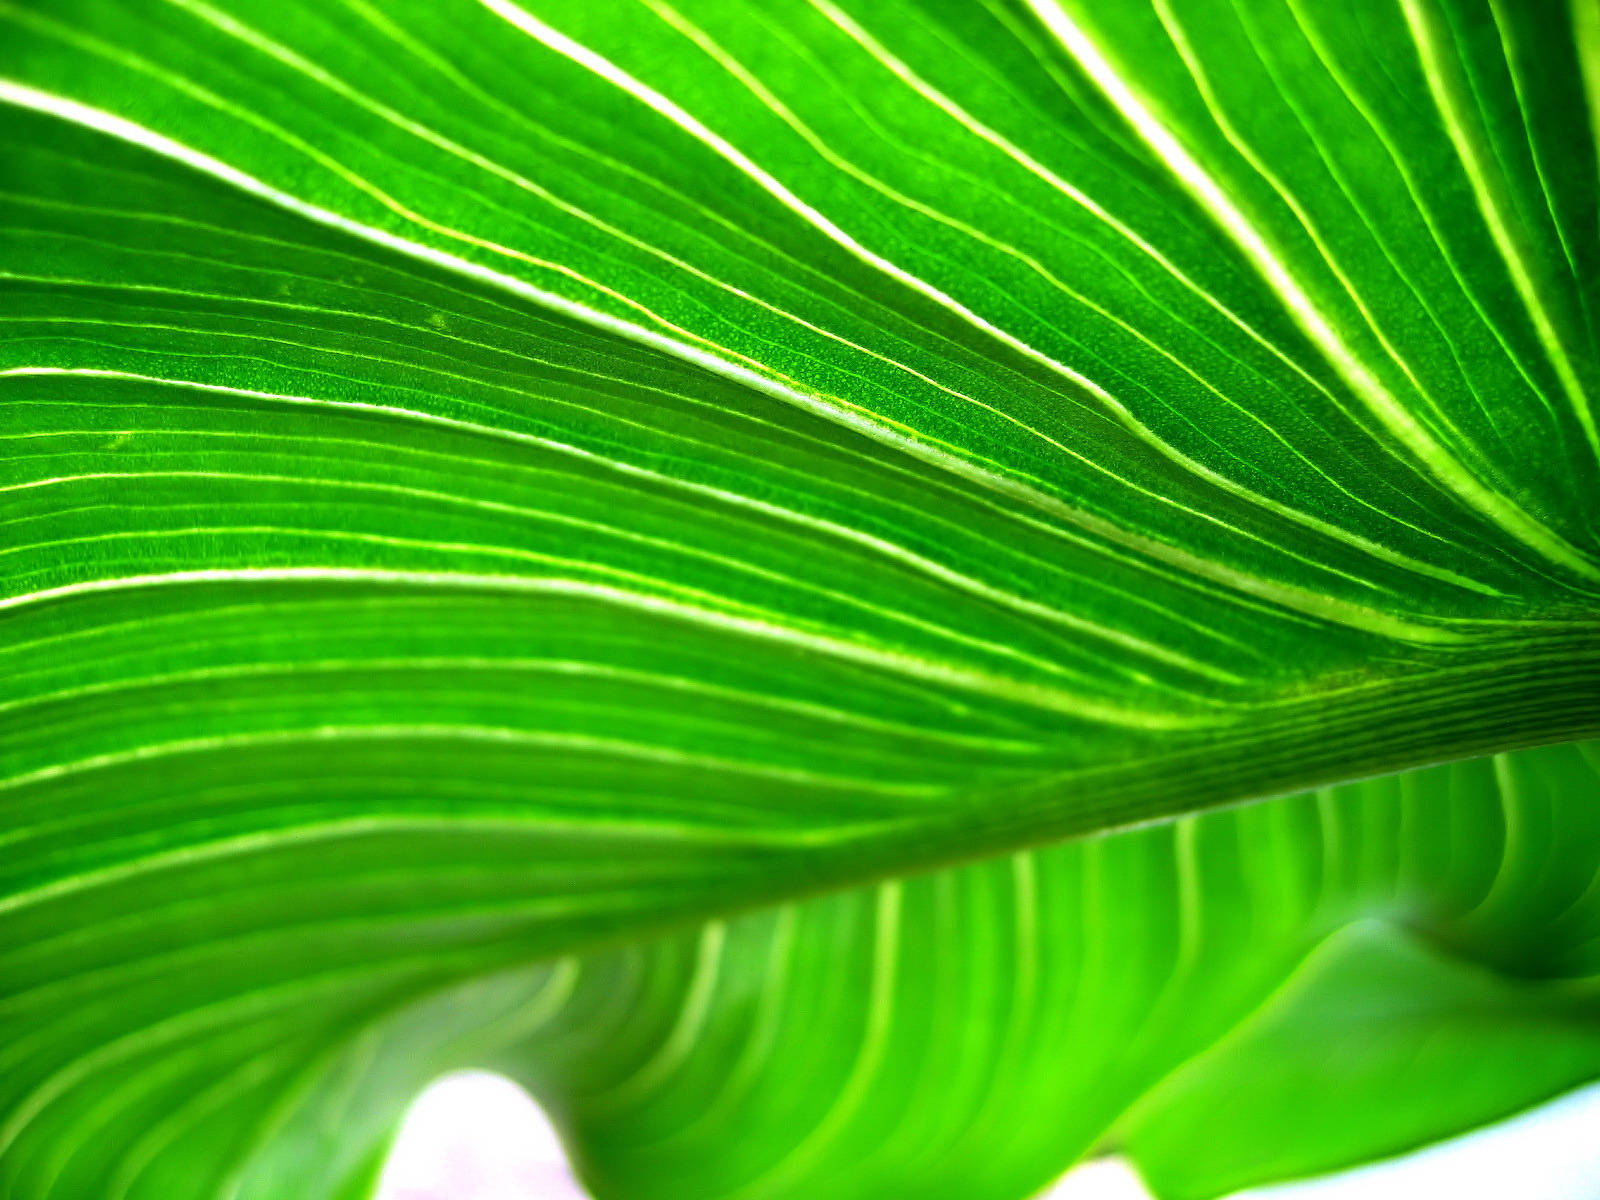 壁纸1600x1200高清晰绿色植物系列 壁纸18壁纸 高清晰绿色植物系列壁纸 高清晰绿色植物系列图片 高清晰绿色植物系列素材 动物壁纸 动物图库 动物图片素材桌面壁纸